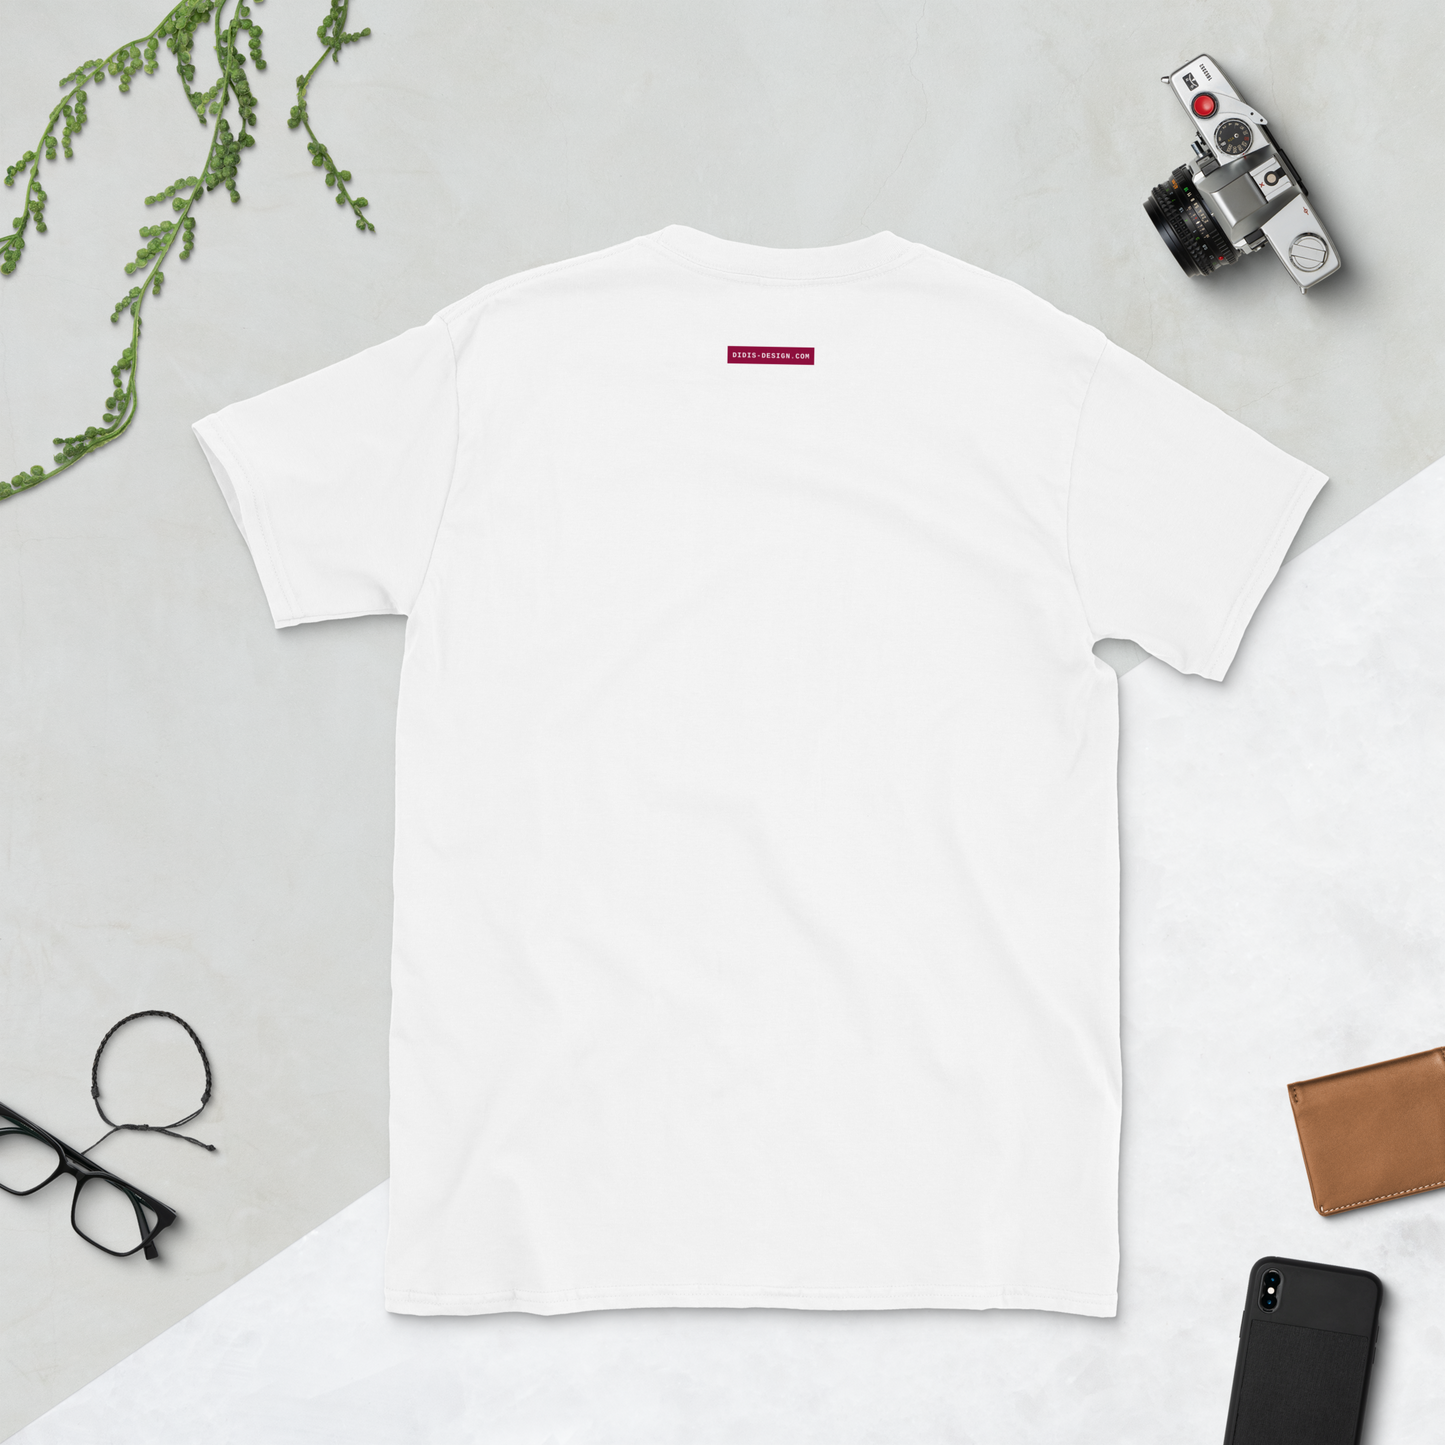 New Era Shogun T-Shirt - Short-Sleeve Unisex T-Shirt